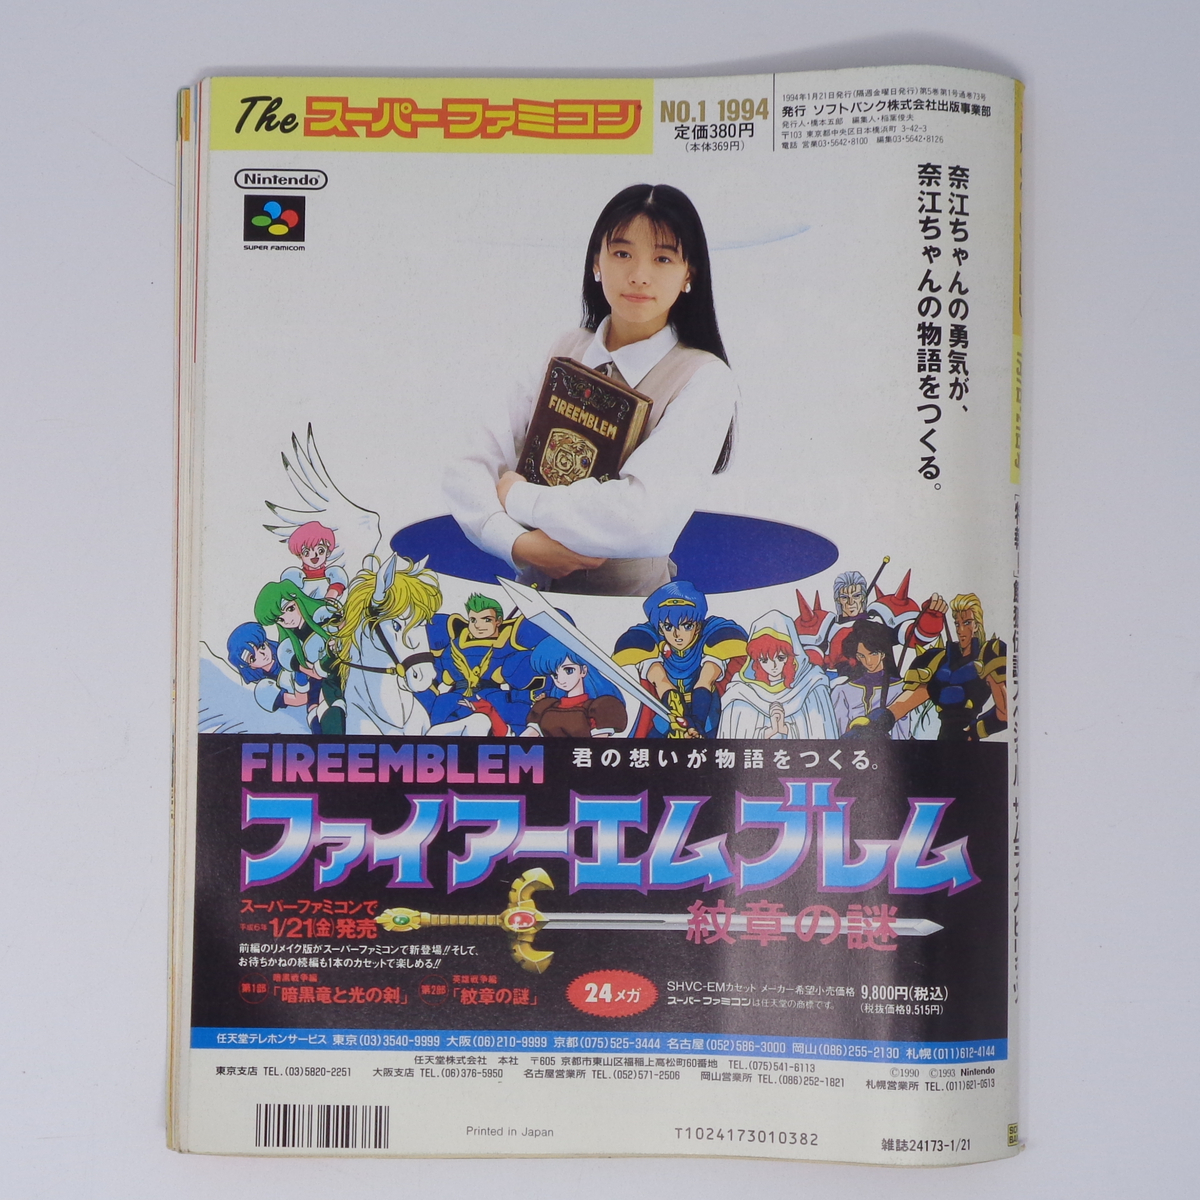 【曲がりあり】The SuperFamicom 1994年1月7・21日号 NO.1 別冊付録無し /ロックマンX//Theスーパーファミコン/ゲーム雑誌[Free Shipping]